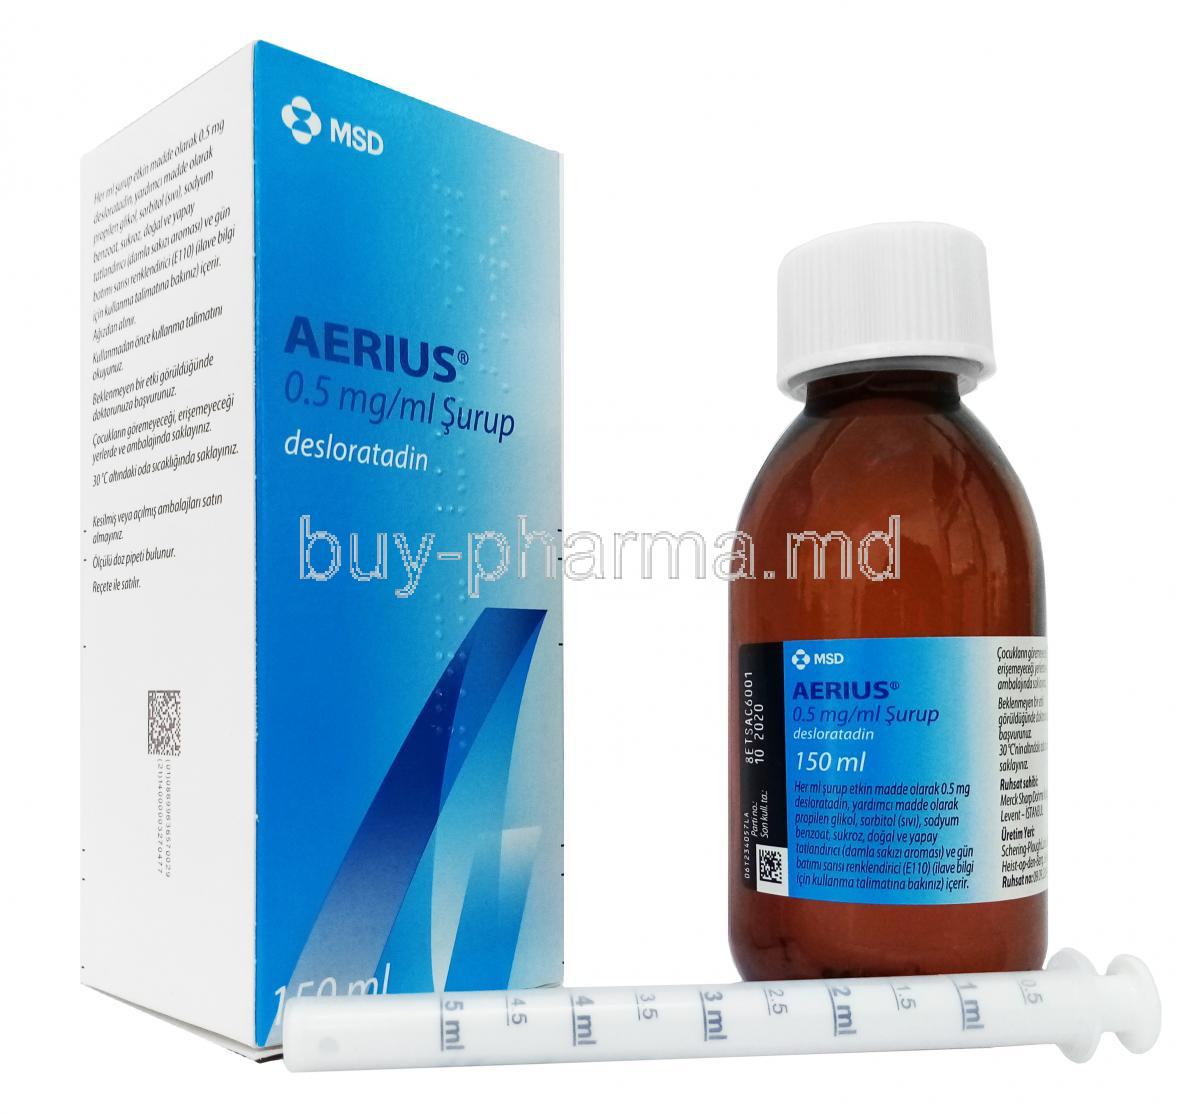 AERIUS SYRUP (NE) 0.5mgml 150ml box, bottle and syringe